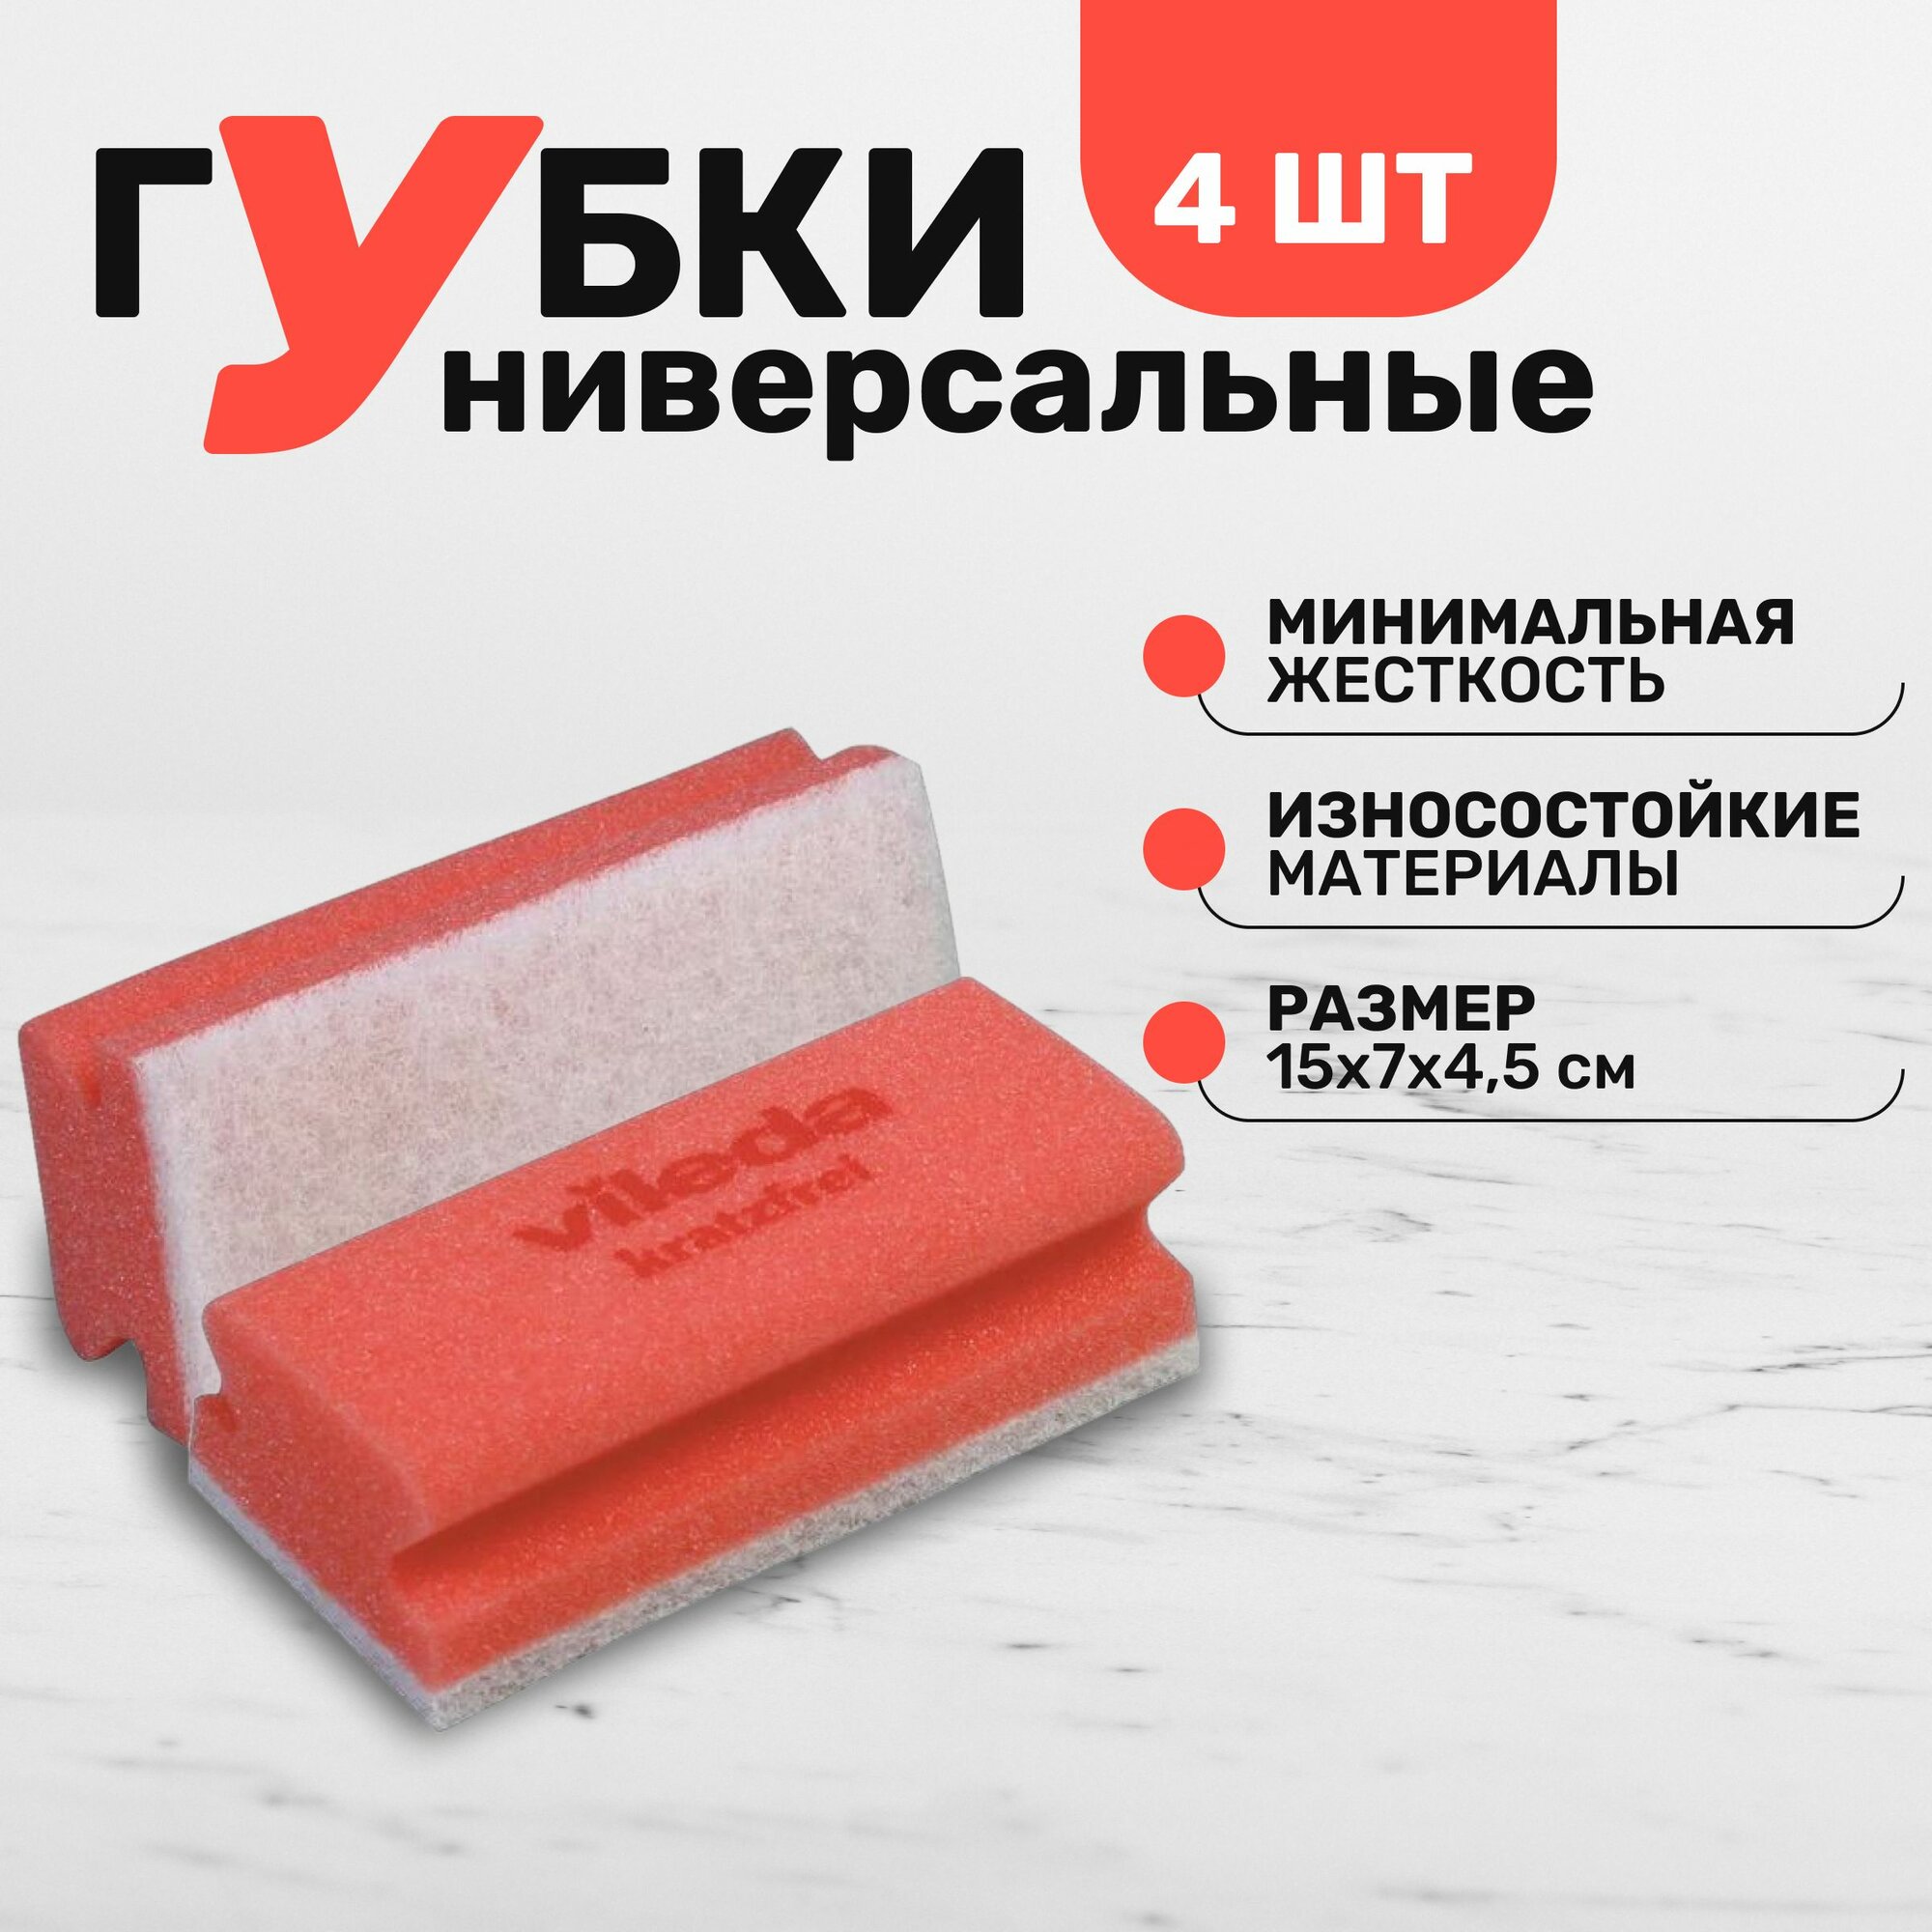 Губка для полировки и очистки мрамора а также других деликатных поверхностей Vileda Professional минимальная жесткость комплект 4 шт цвет красный размер 7х15 см.